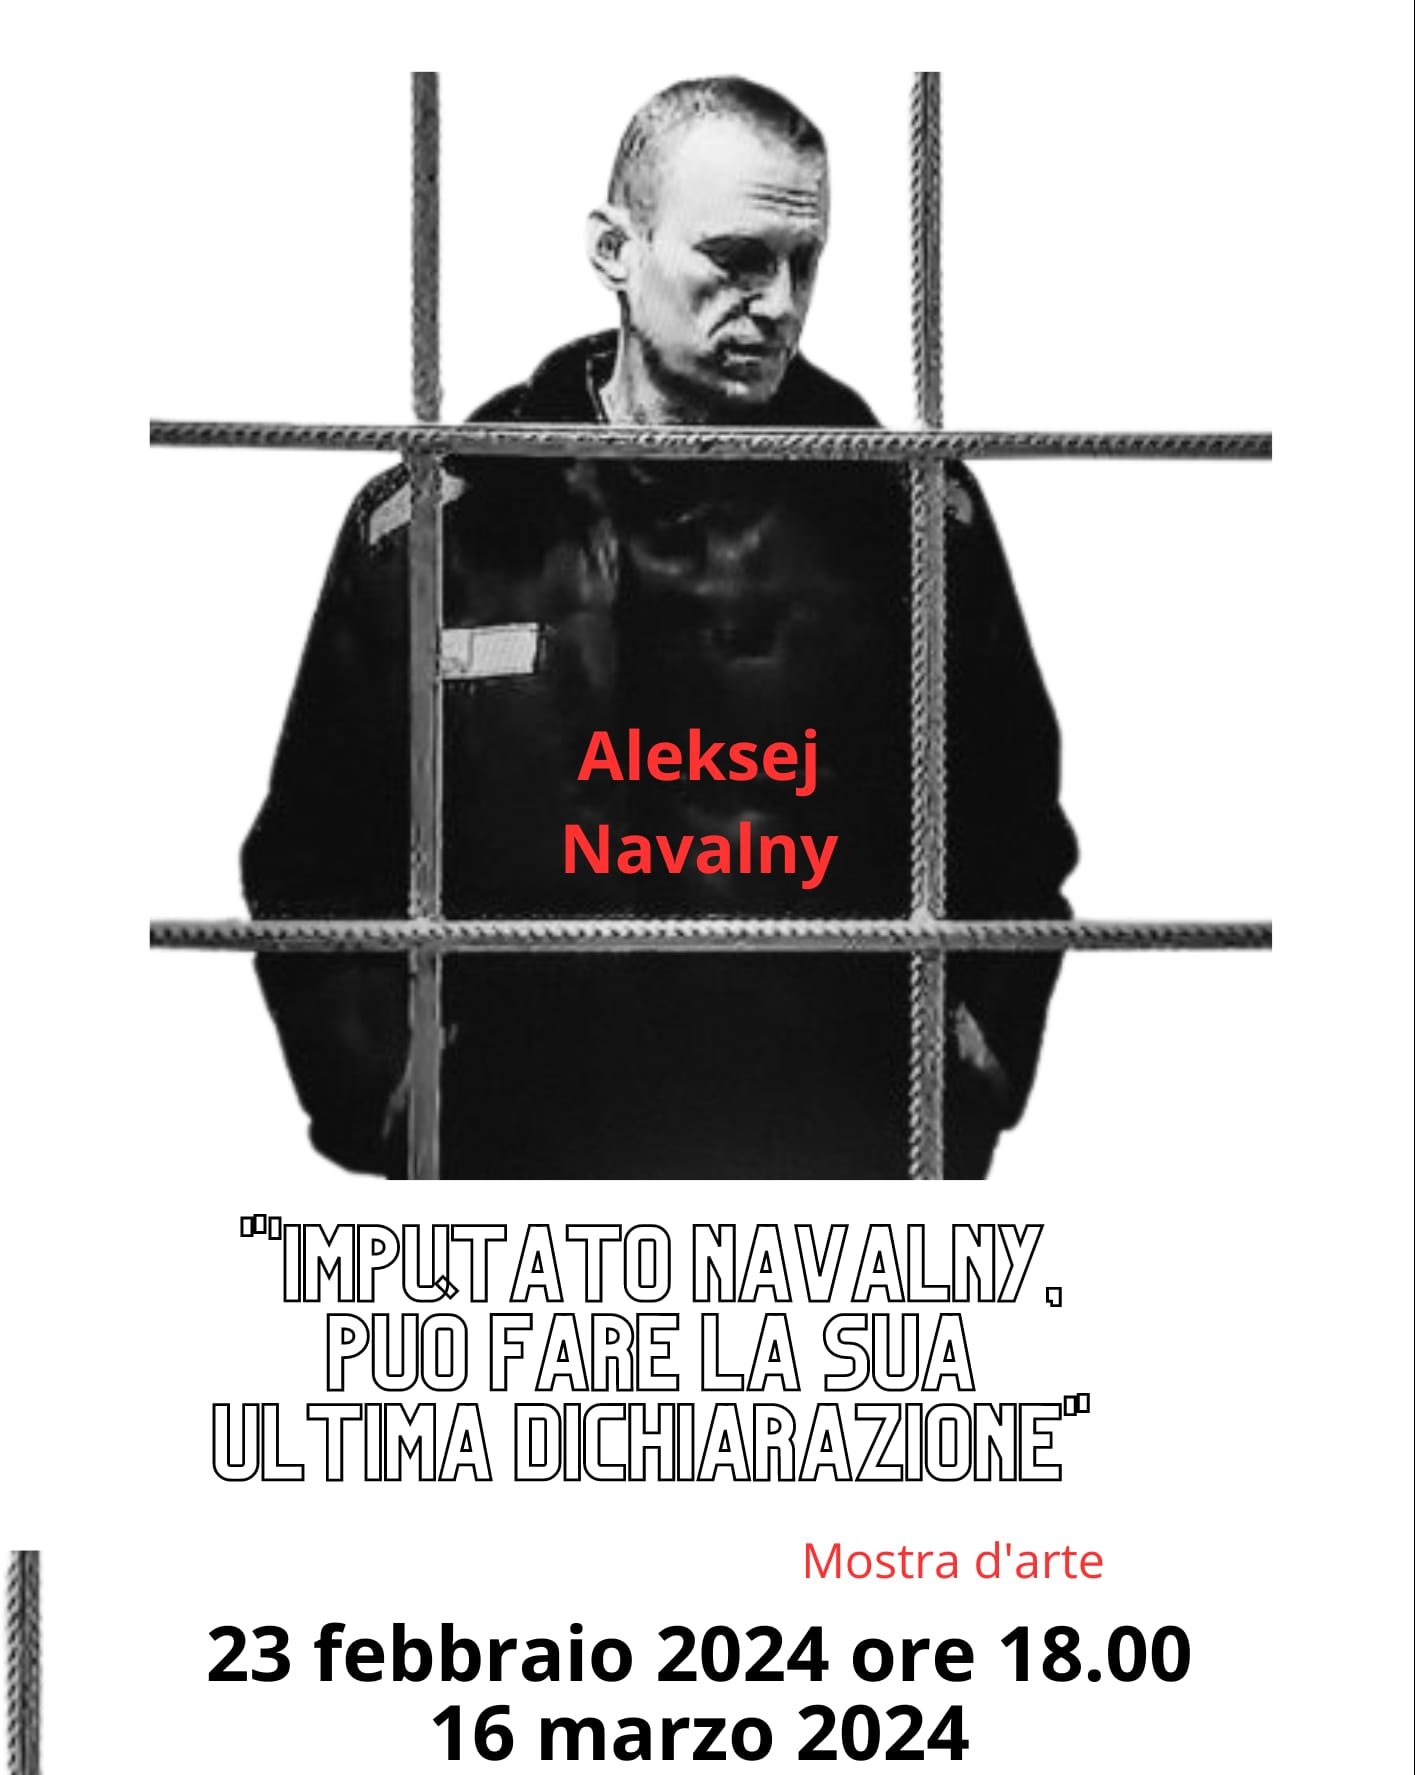 Imputato Navalny può fare la sua ultima dichiarazione – La mostra in memoria di Alexei Navalny